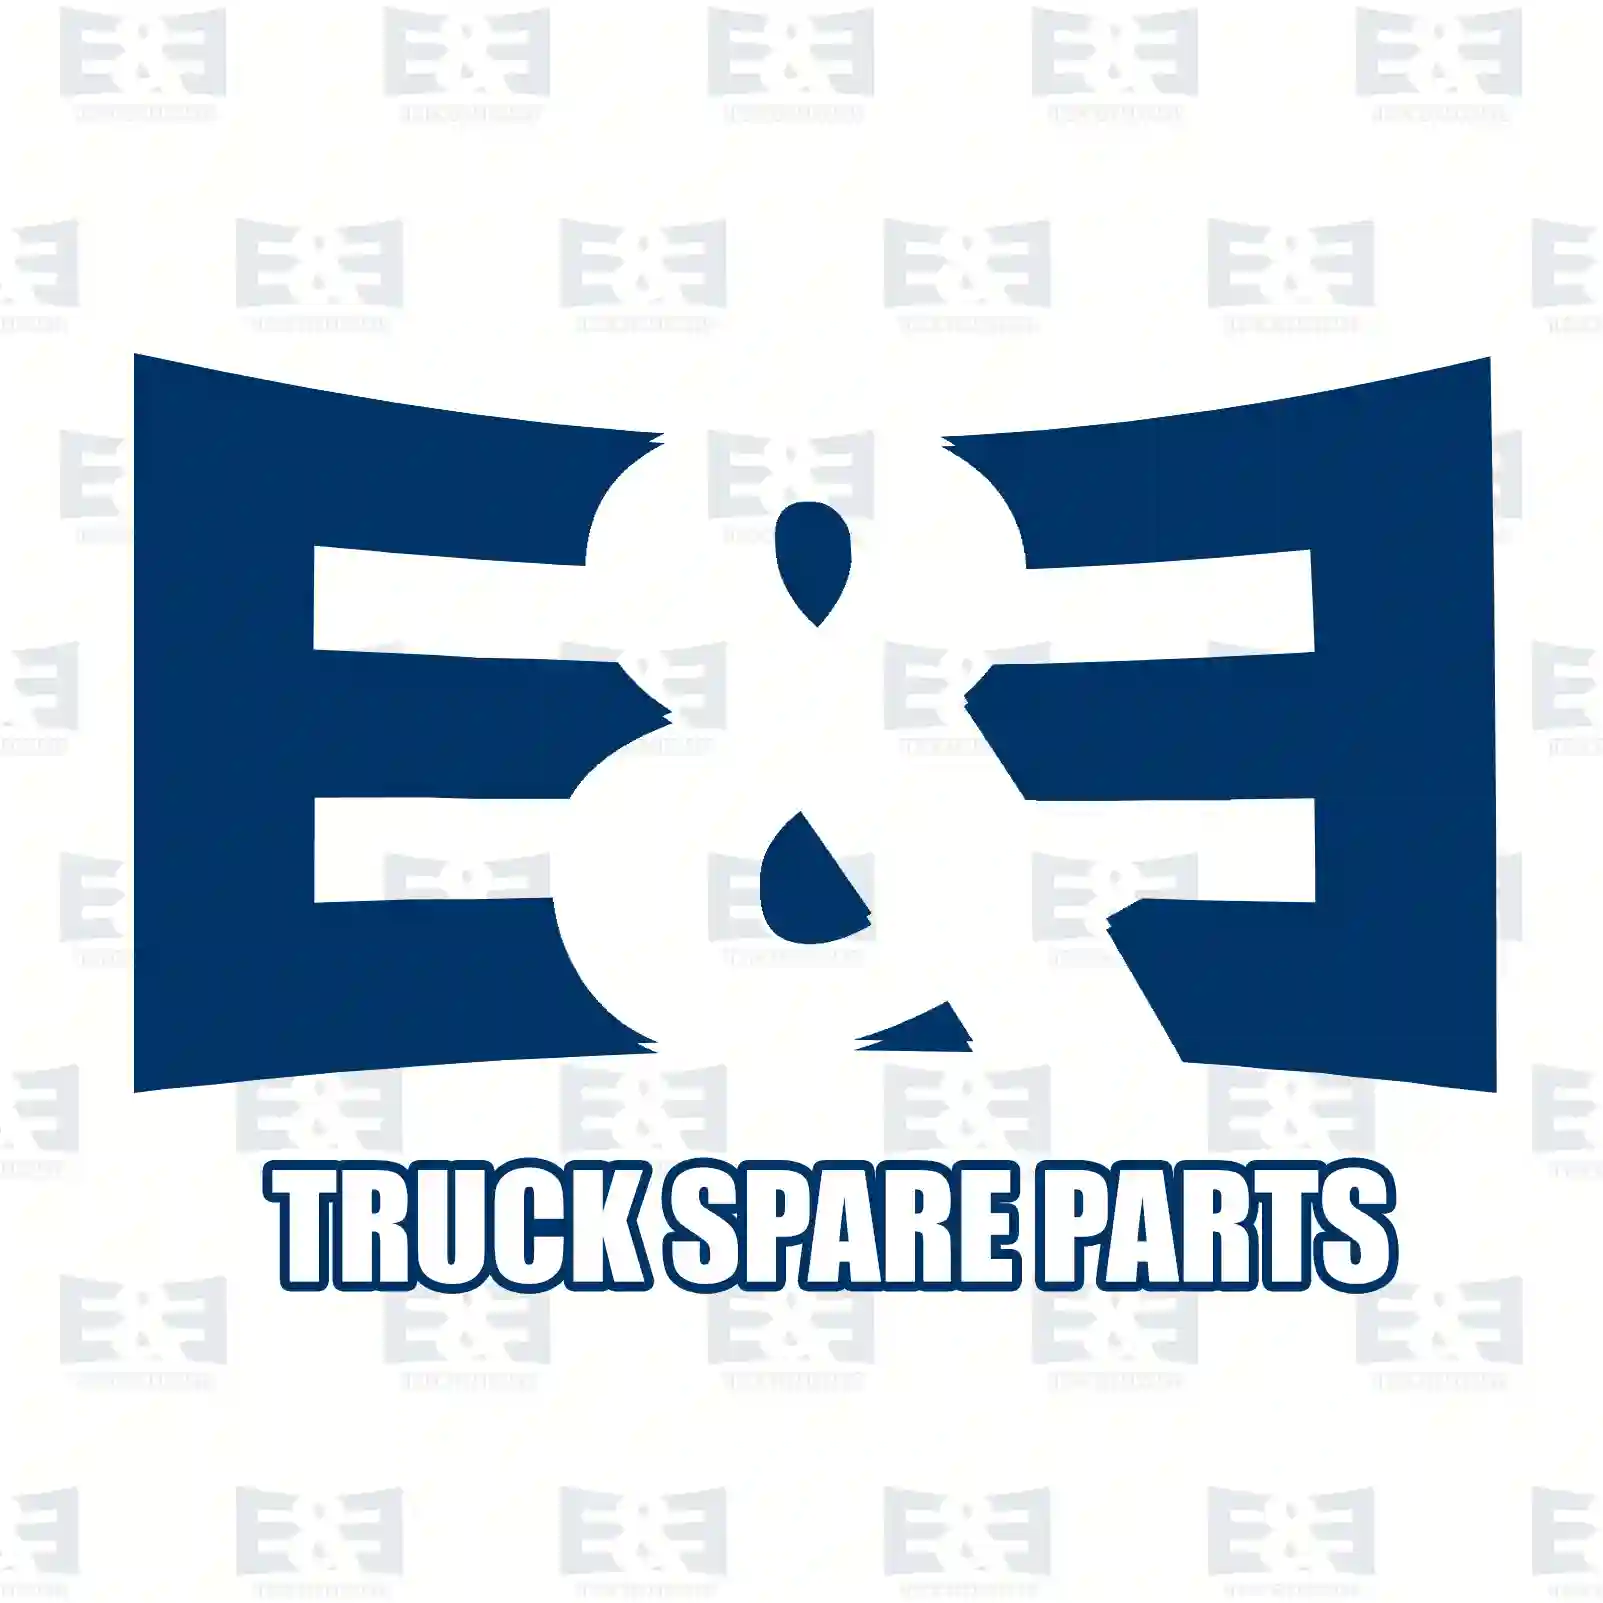 Unit injector, 2E2286077, 20569291, 85000501, 85006501 ||  2E2286077 E&E Truck Spare Parts | Truck Spare Parts, Auotomotive Spare Parts Unit injector, 2E2286077, 20569291, 85000501, 85006501 ||  2E2286077 E&E Truck Spare Parts | Truck Spare Parts, Auotomotive Spare Parts